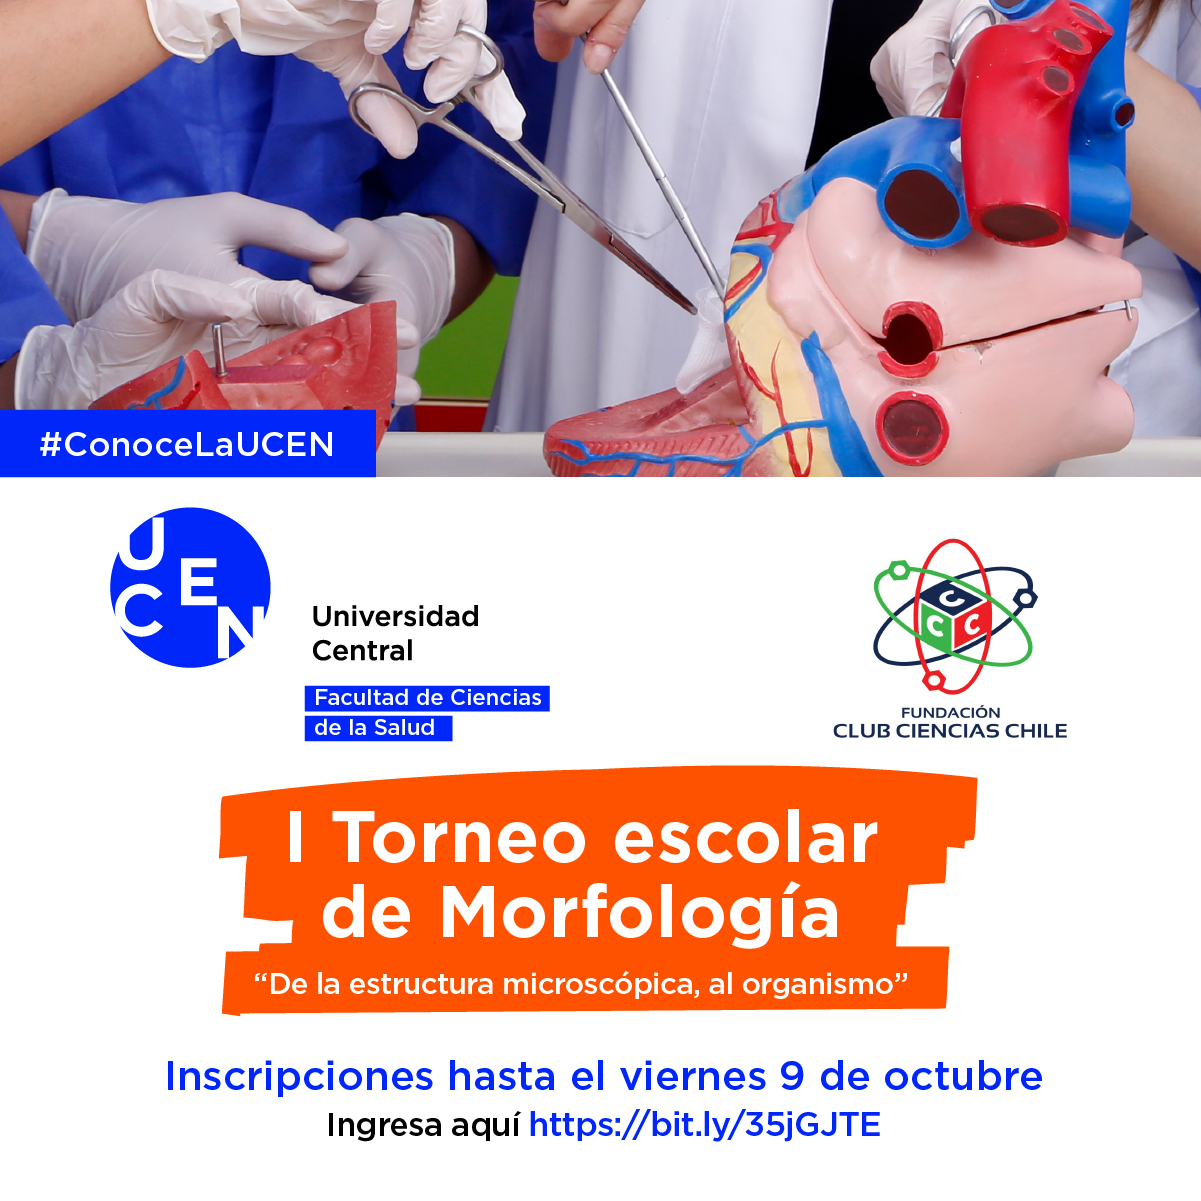 Fundación Club Ciencias Chile (@CienciasChile) / Twitter